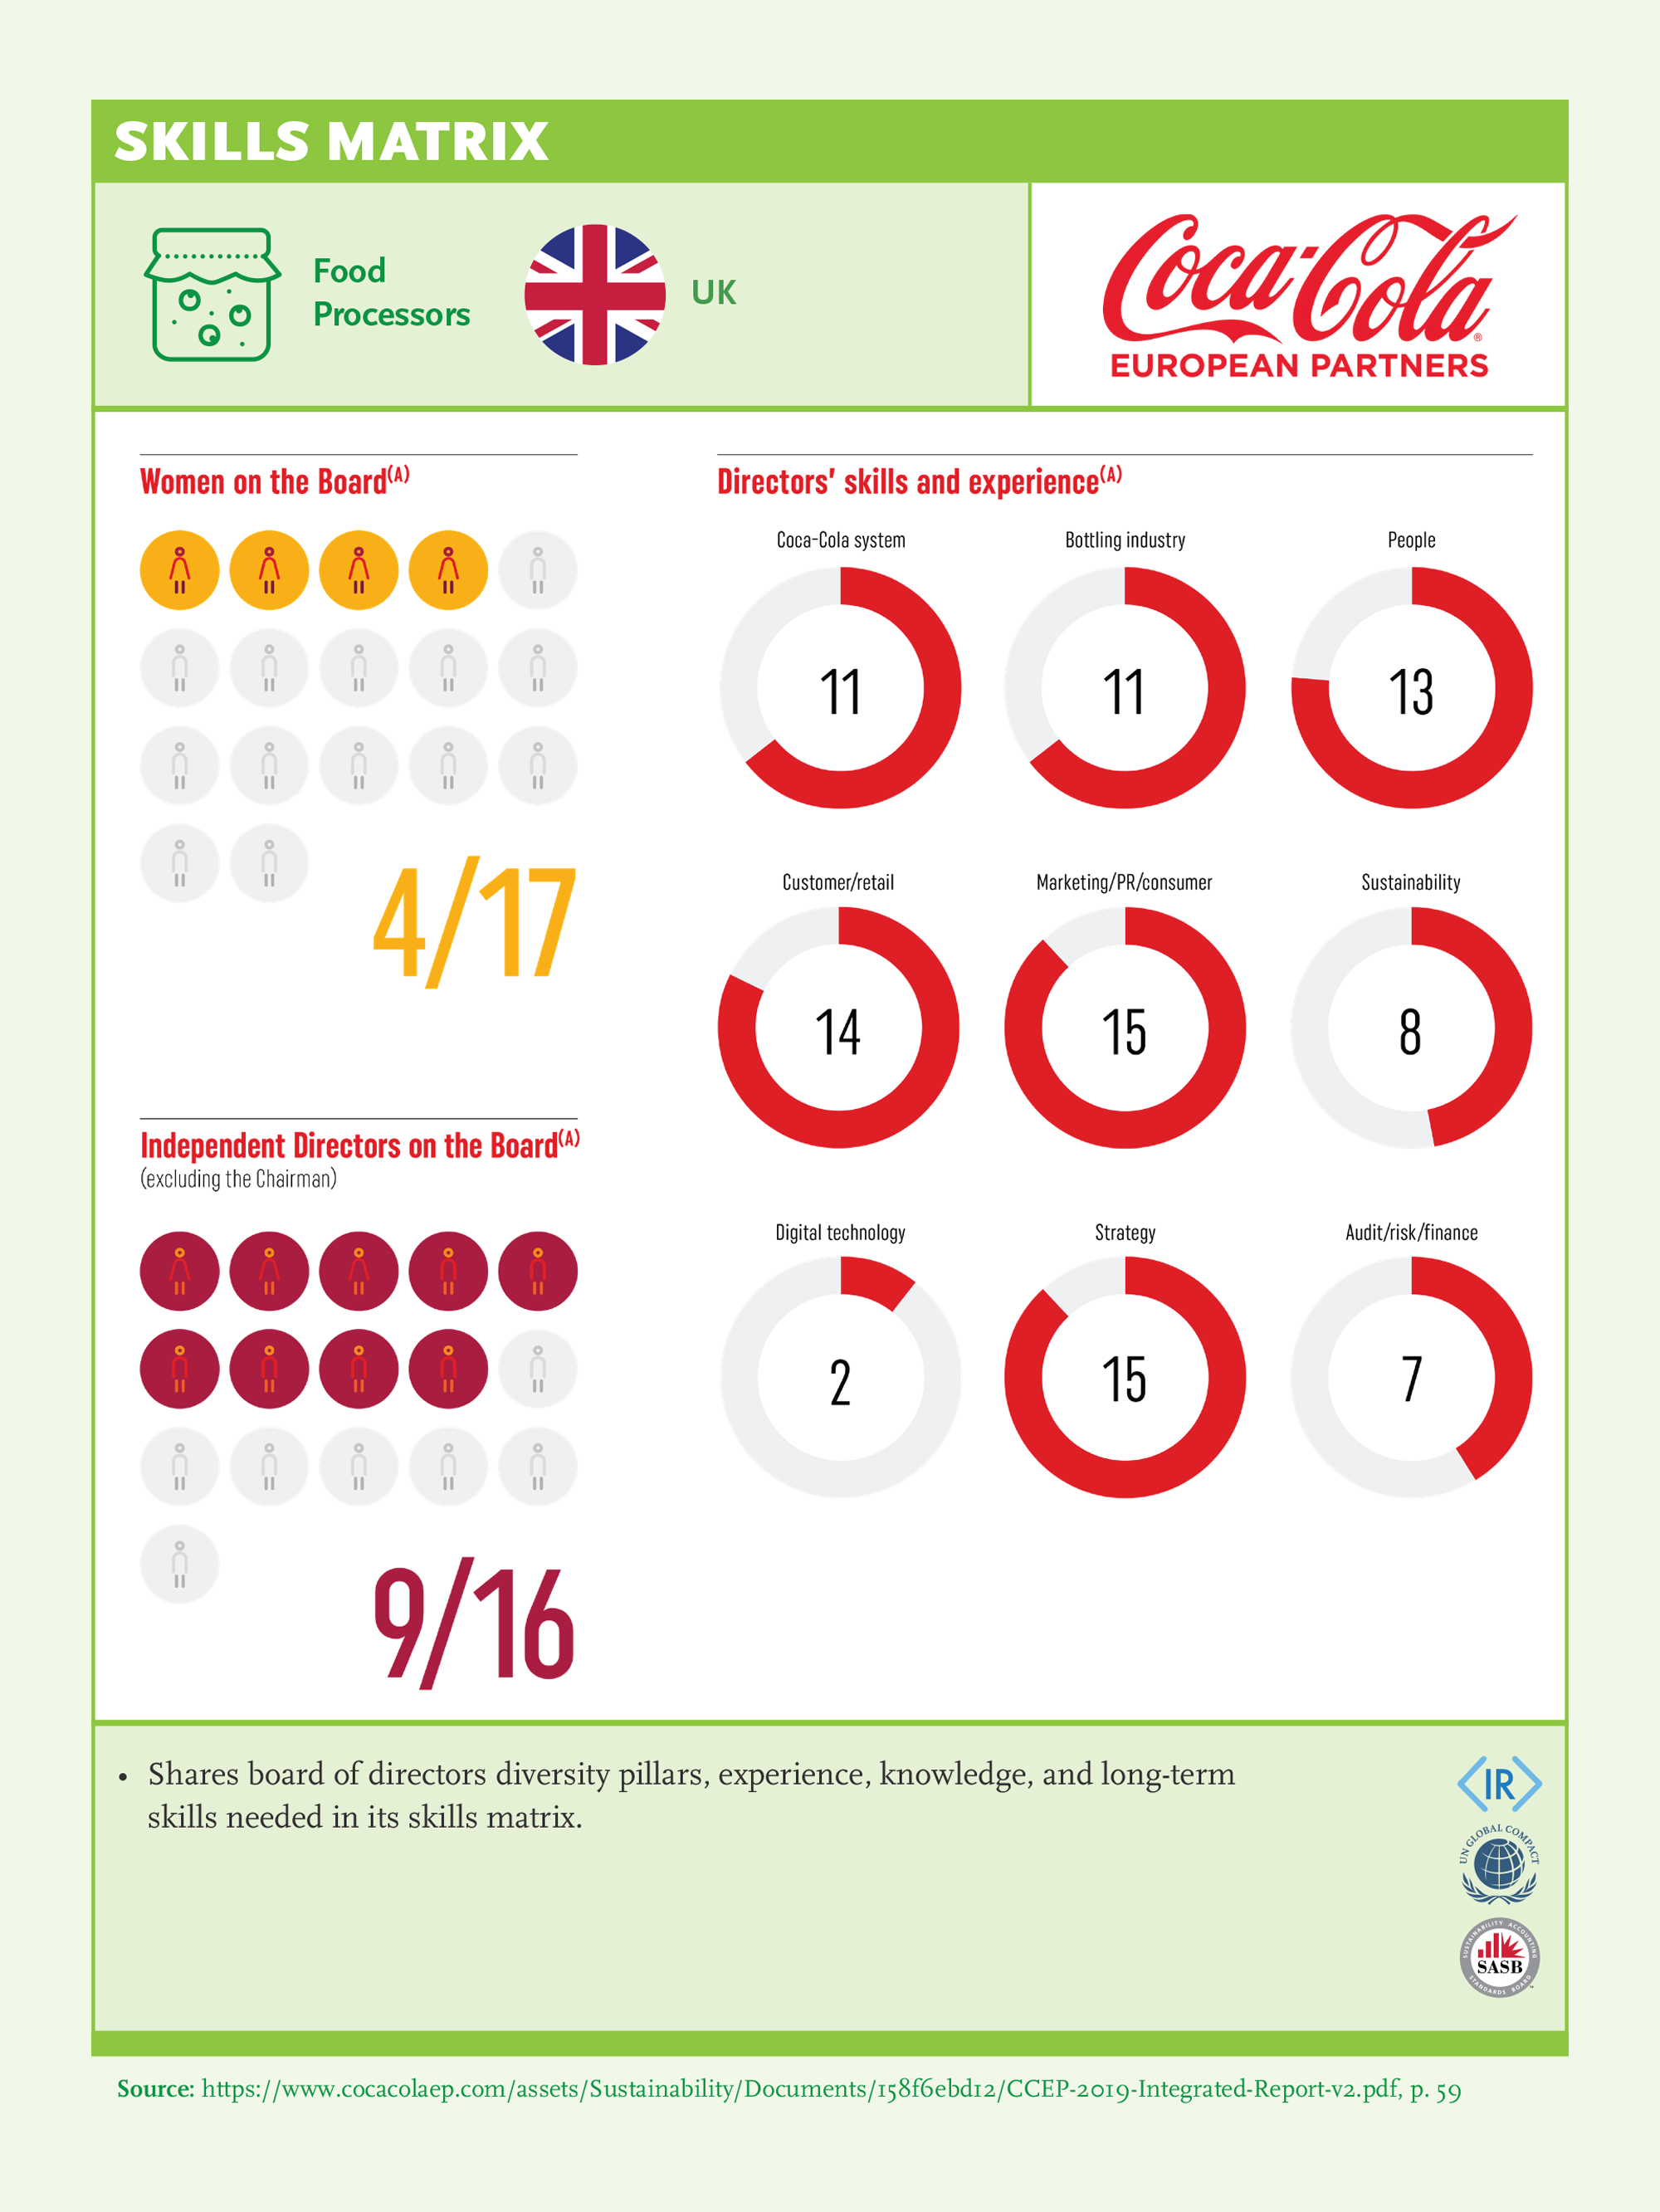 Skills Matrix: Coca Cola European Partners